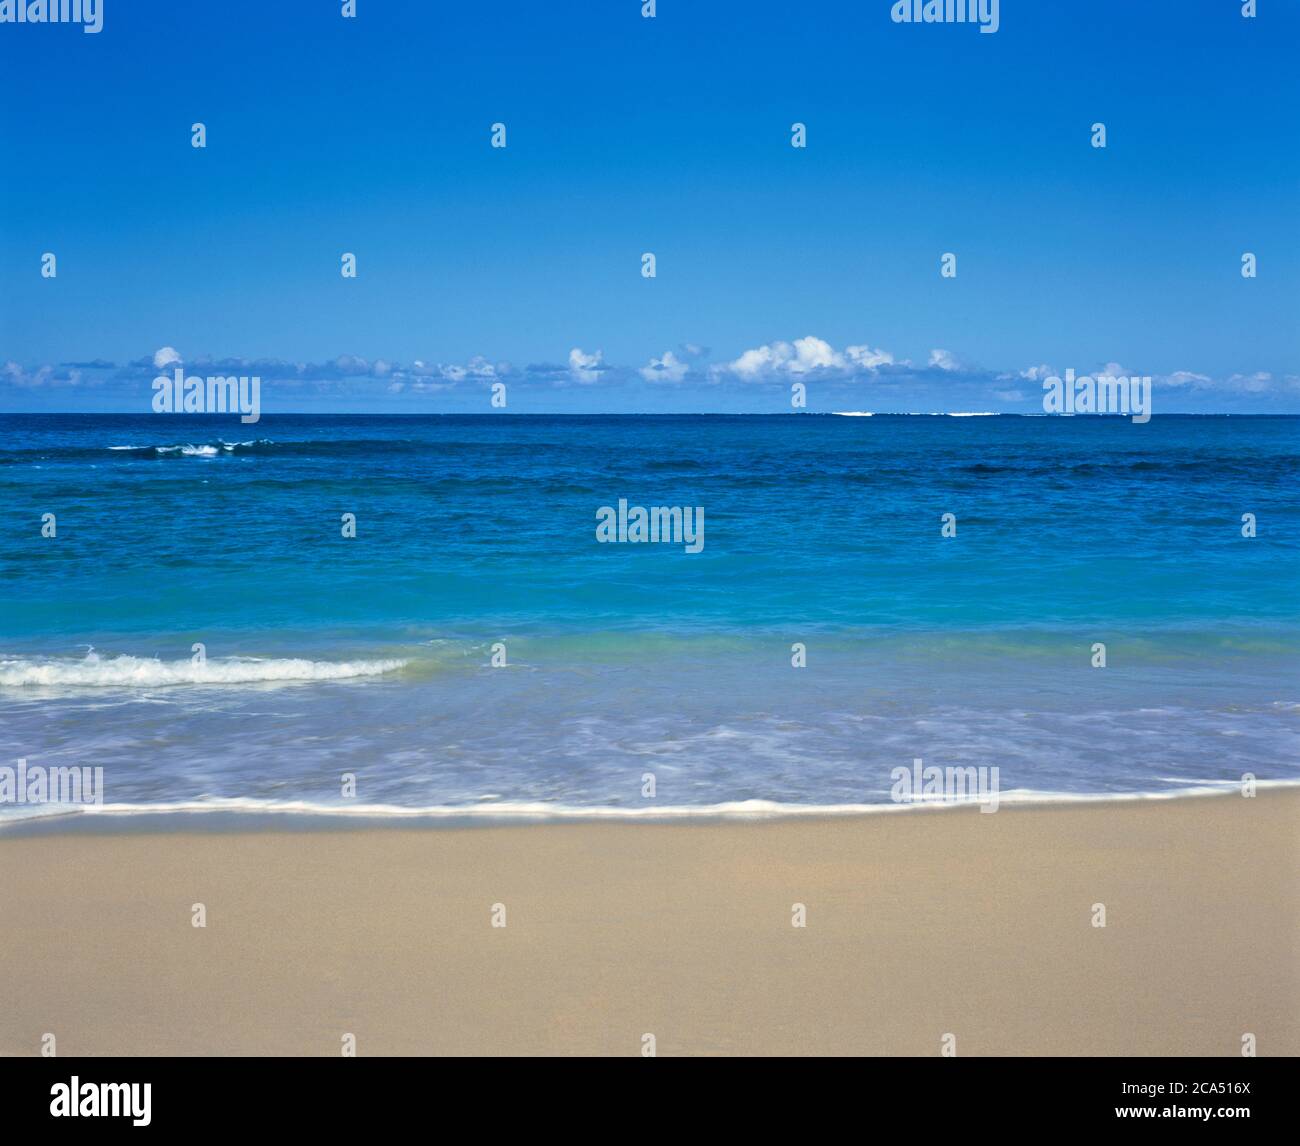 Playa de arena y mar azul con línea clara de horizonte en el fondo, Maui, Hawai, EE.UU Foto de stock